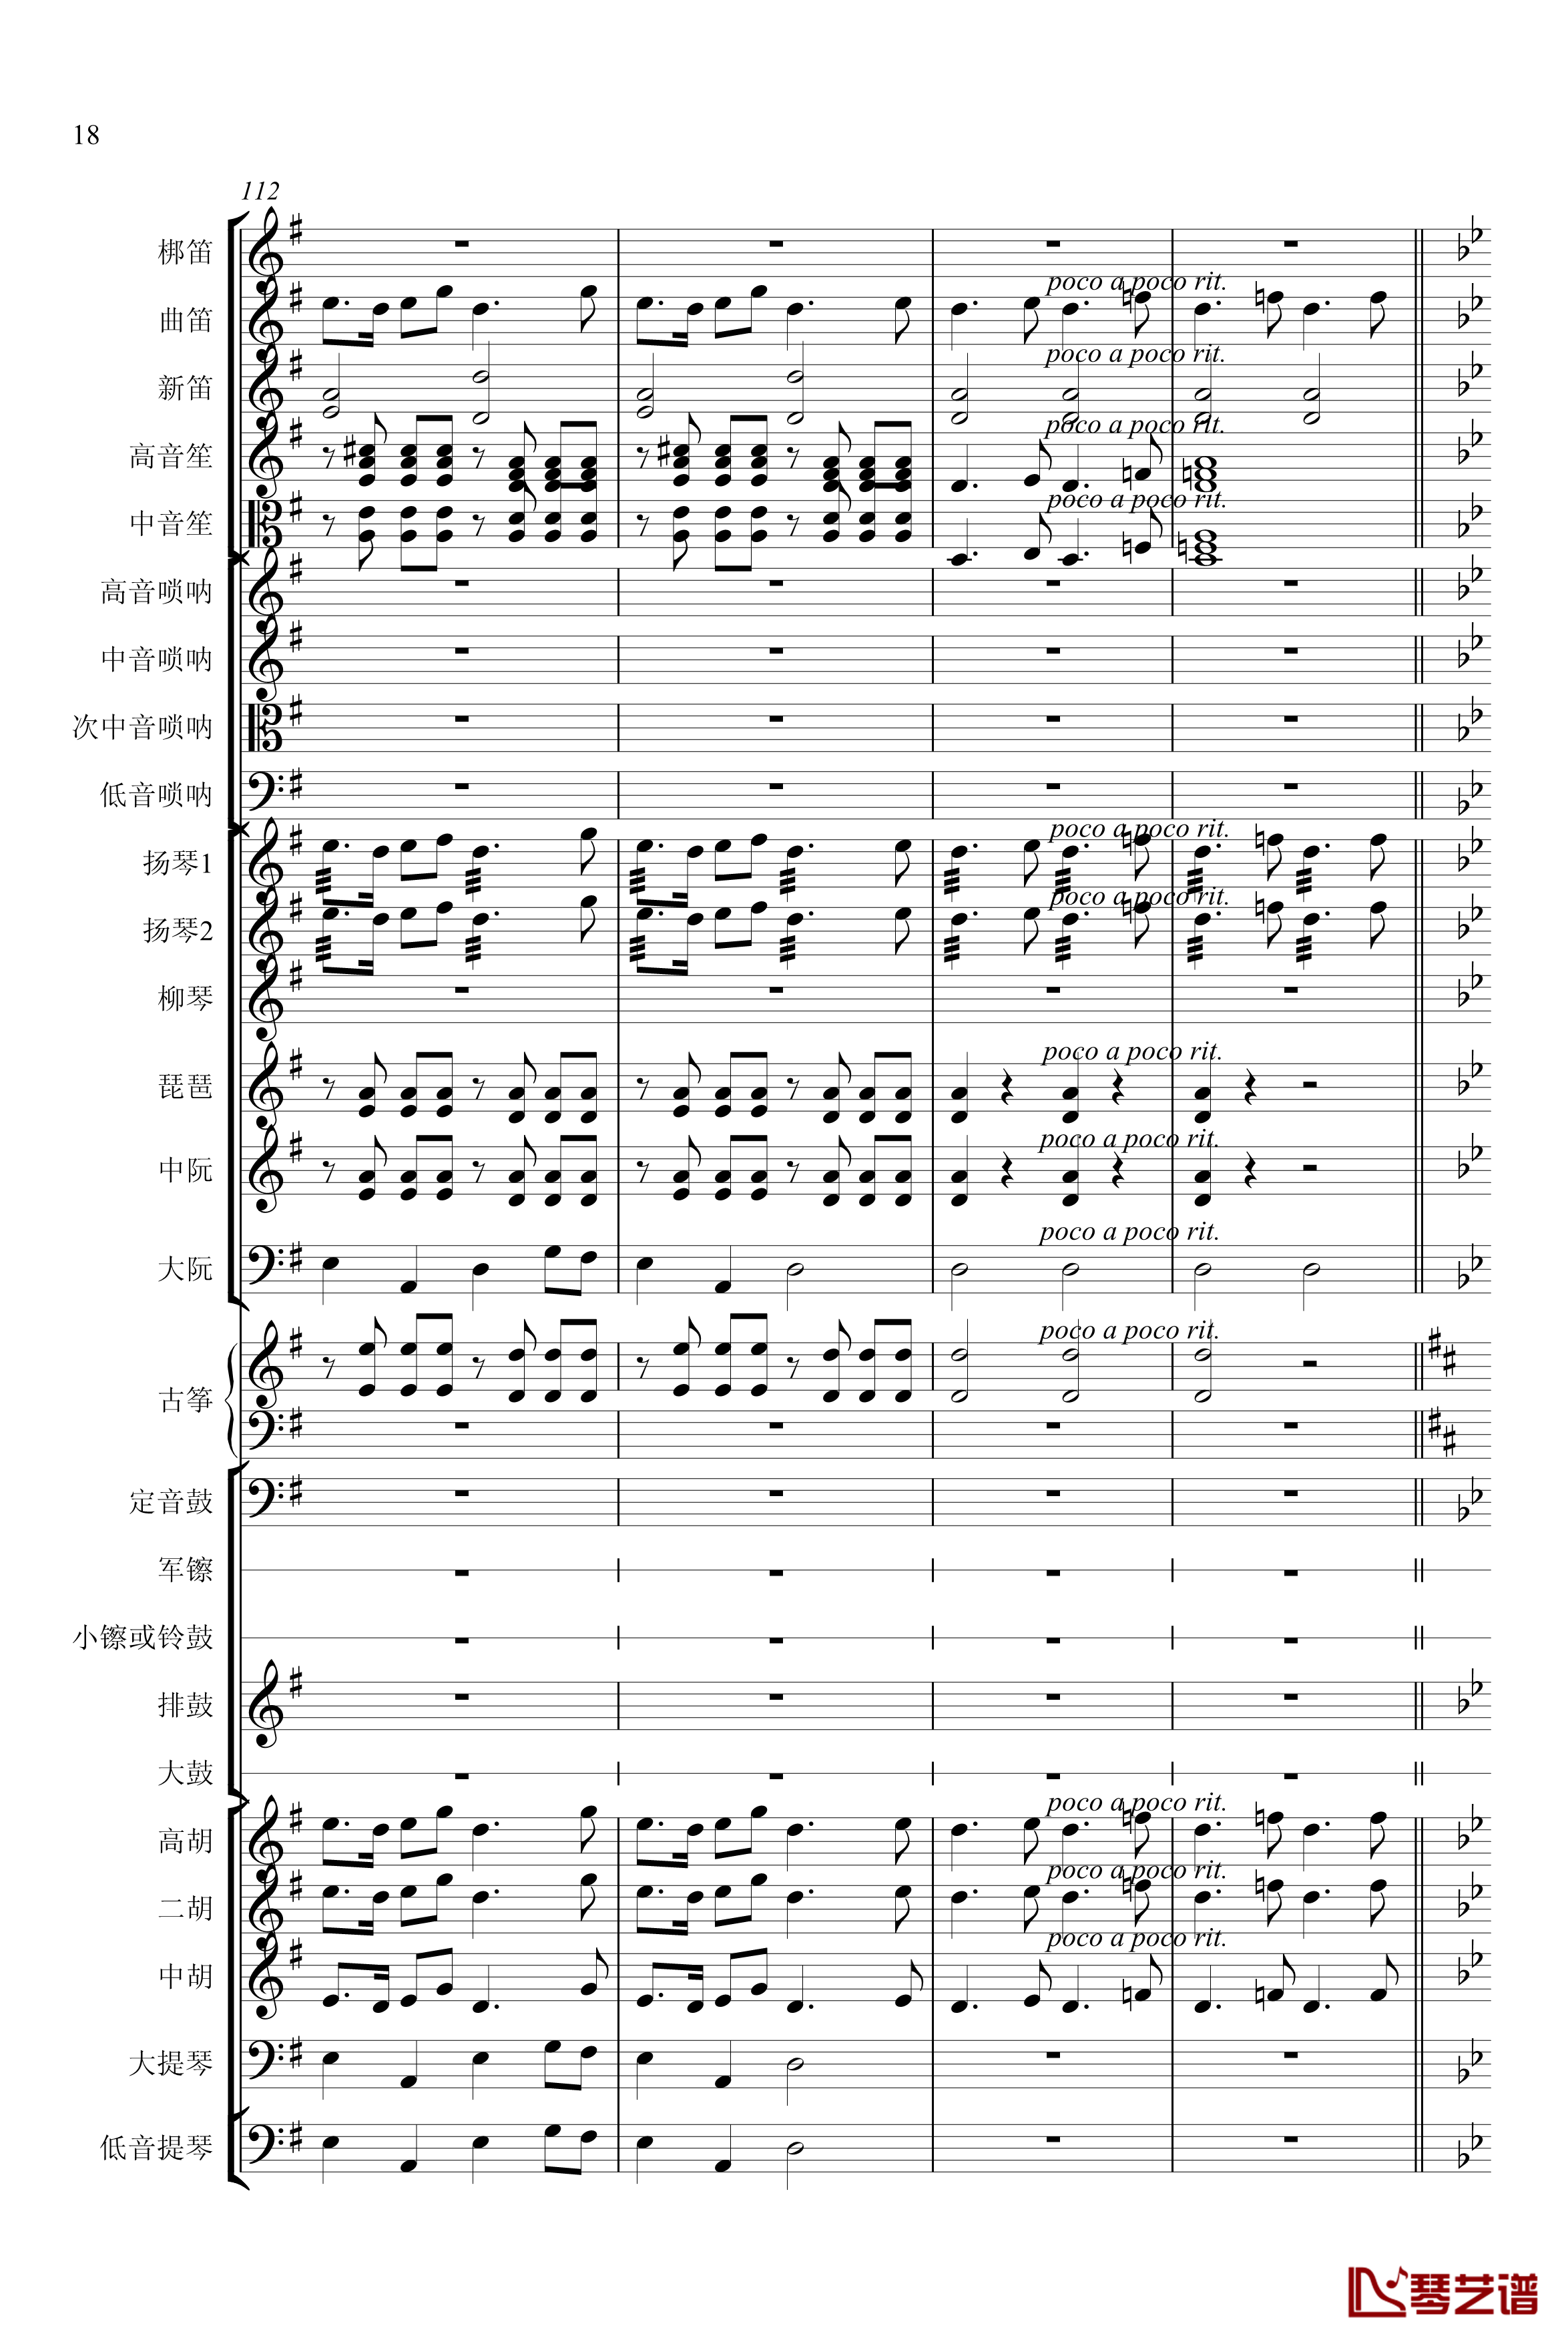 春节序曲钢琴谱-专业总谱-中国名曲18